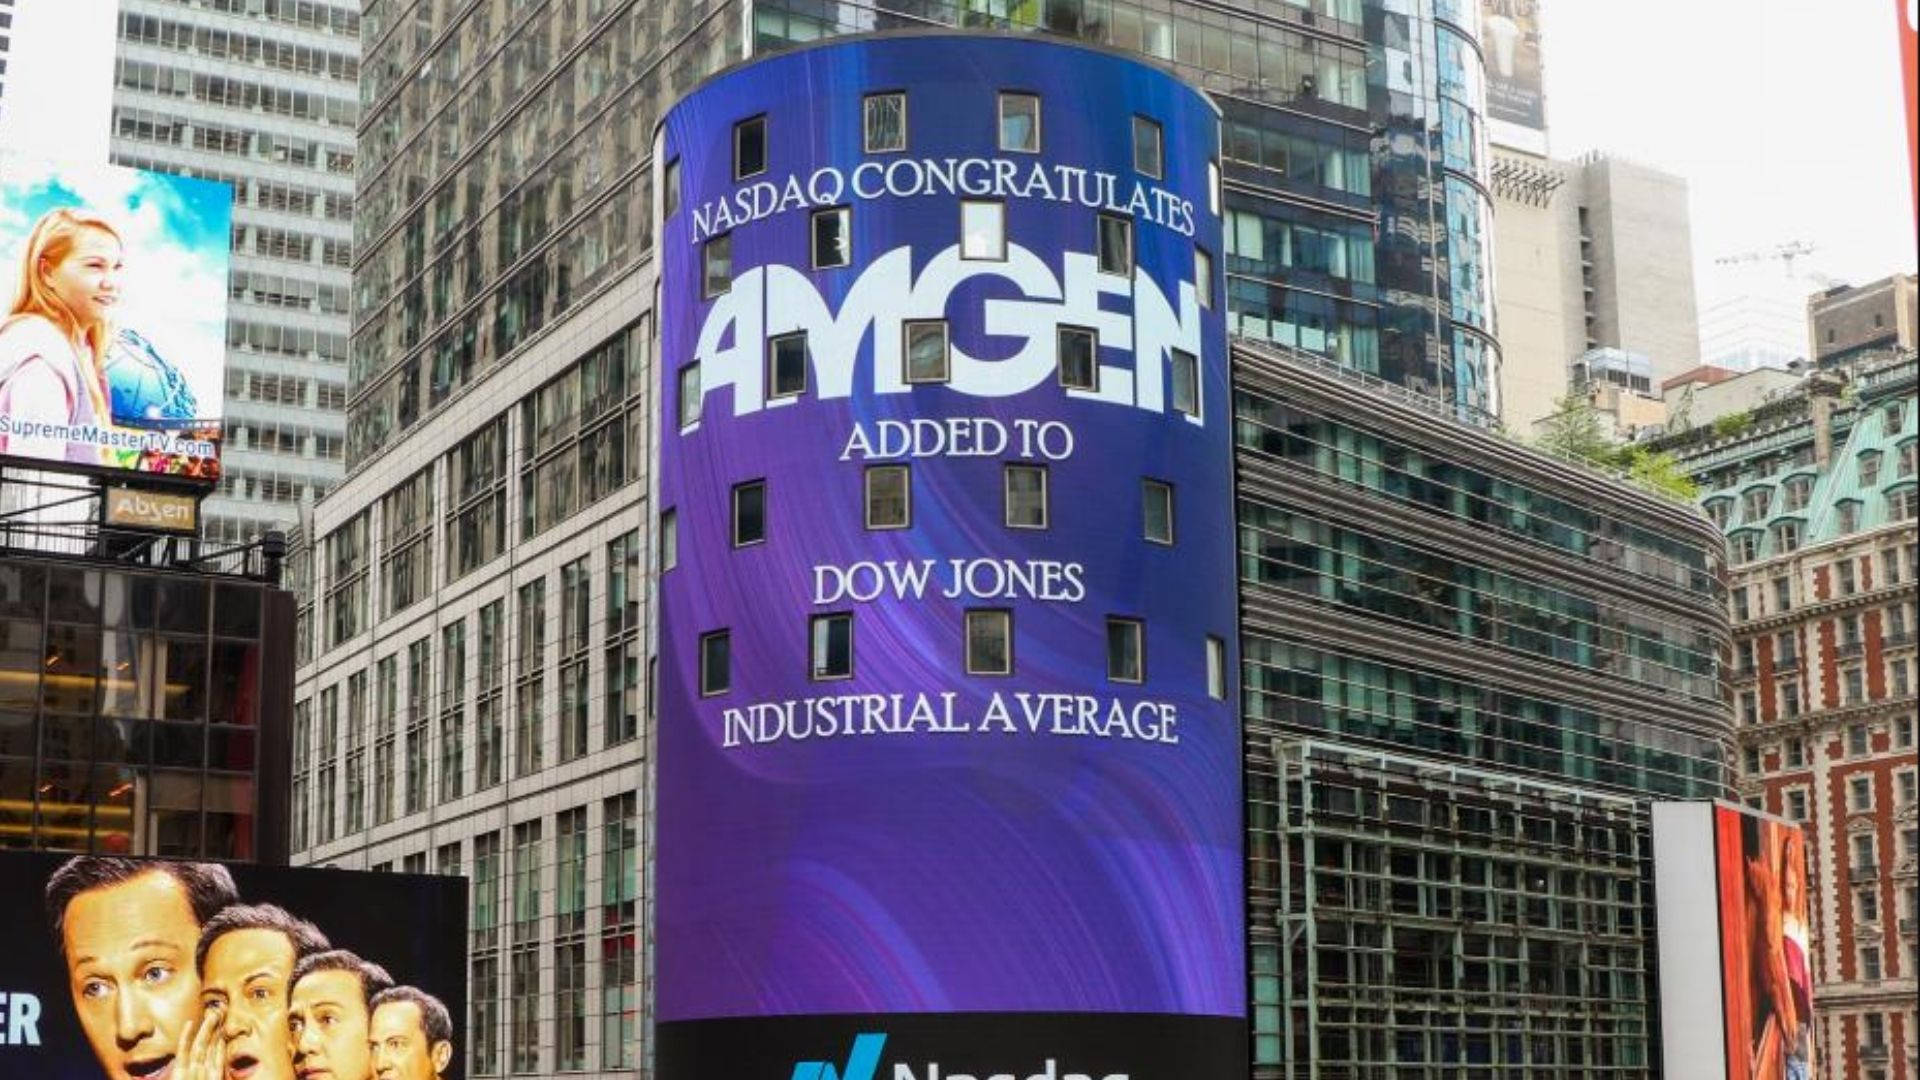 Dow Jones Led Screen